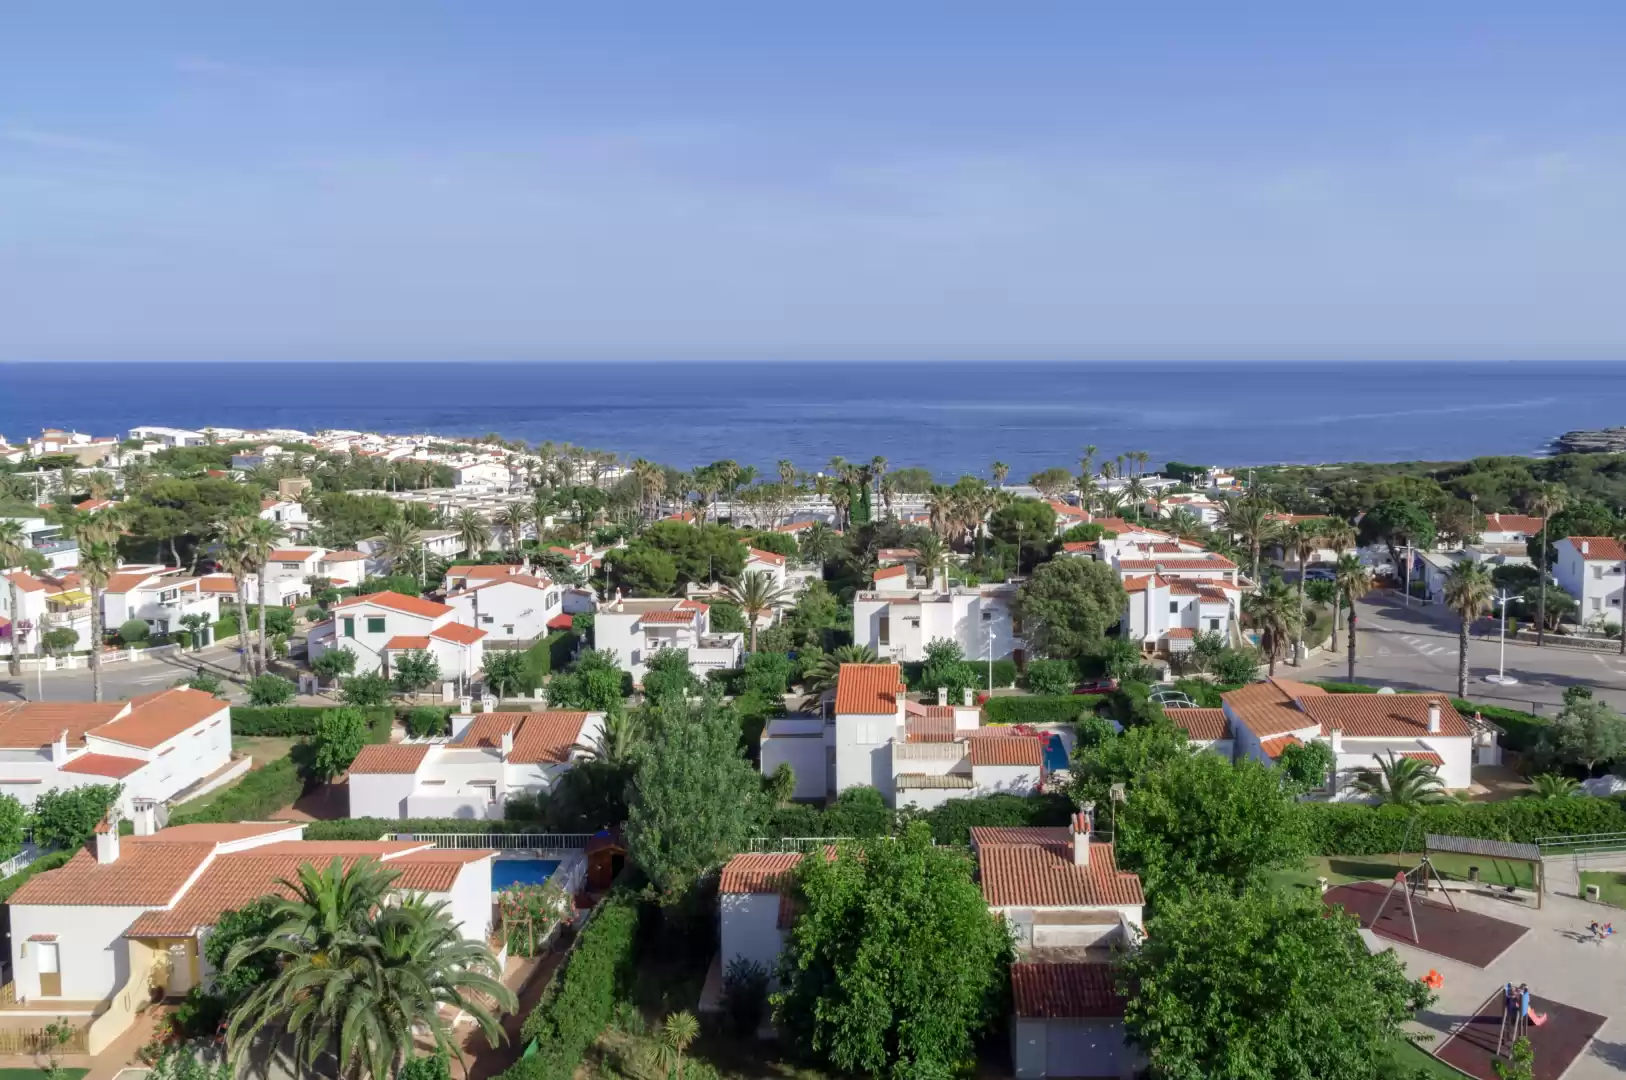 S'Algar, Menorca